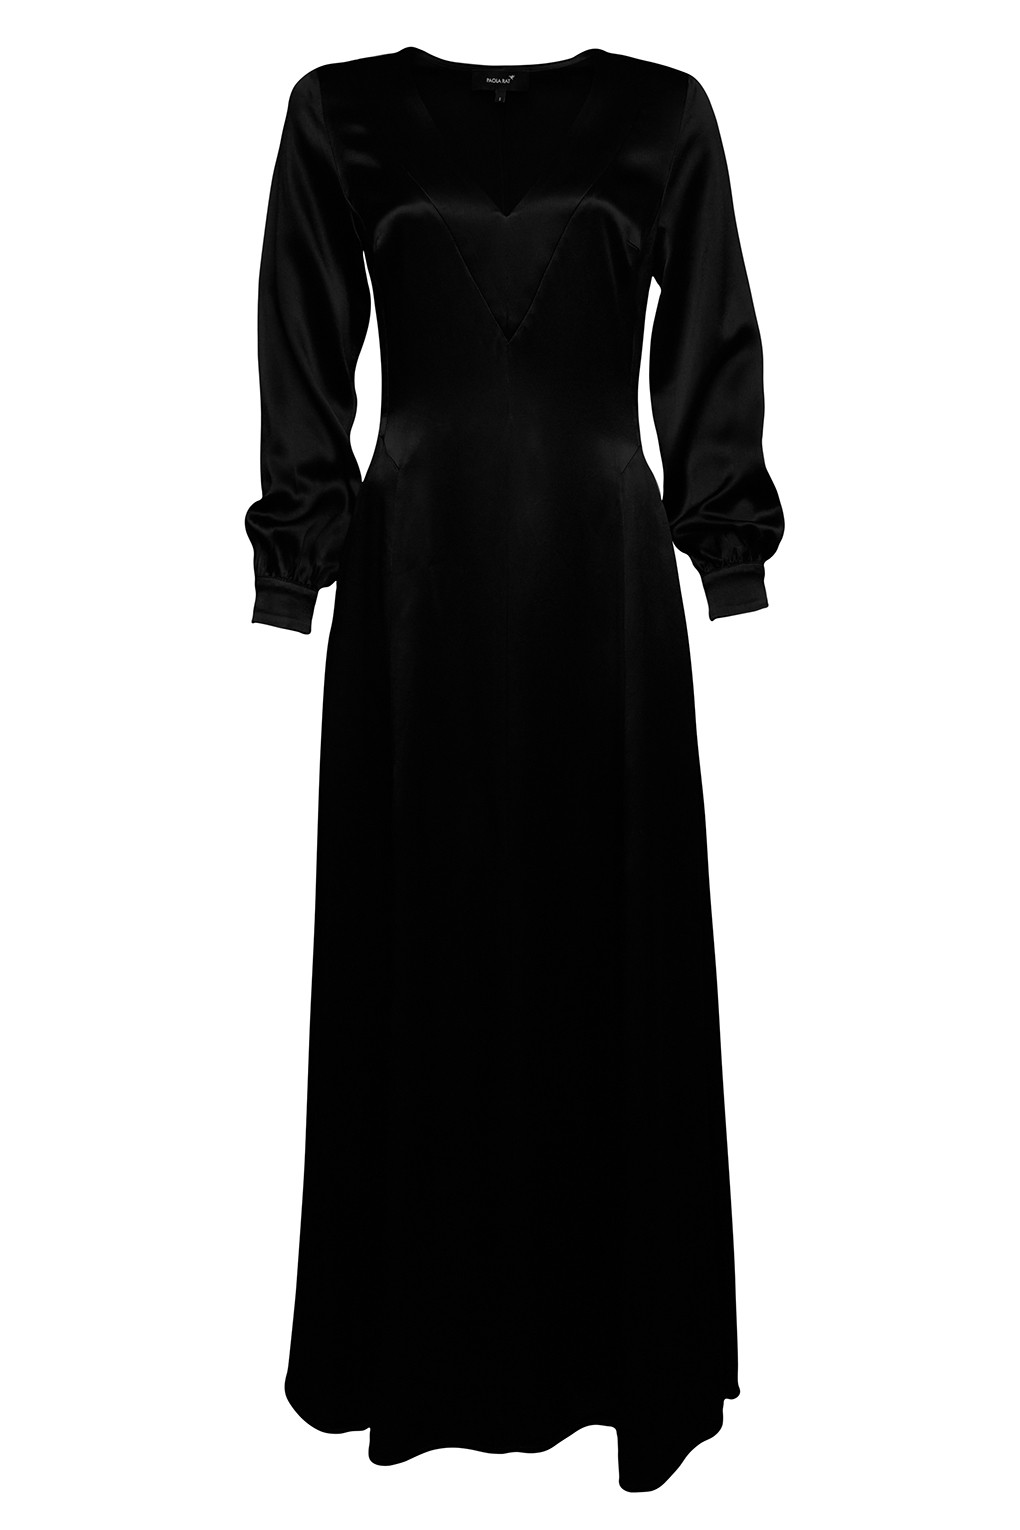 Платье женское PAOLA RAY PR121-3018 черное XS